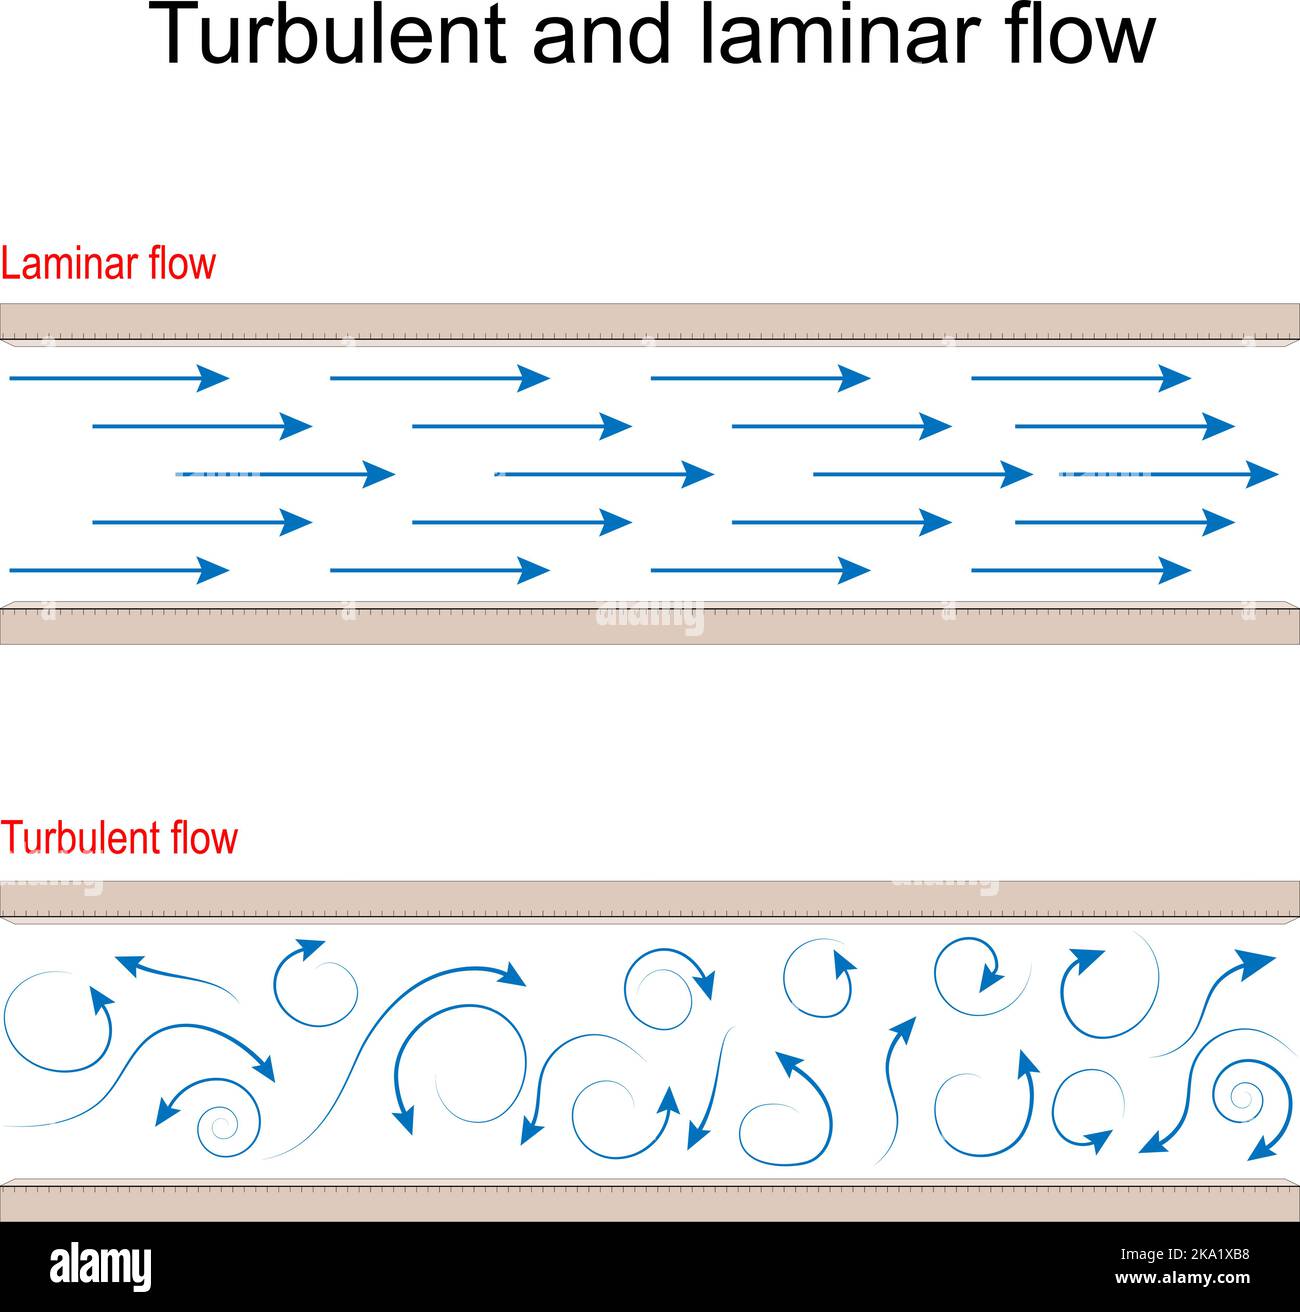 Comparaison d'écoulement turbulent et laminaire. La turbulence est un mouvement avec des changements chaotiques de pression et de vitesse de l'écoulement du vent. Laminaire - quand un flux d'air Illustration de Vecteur